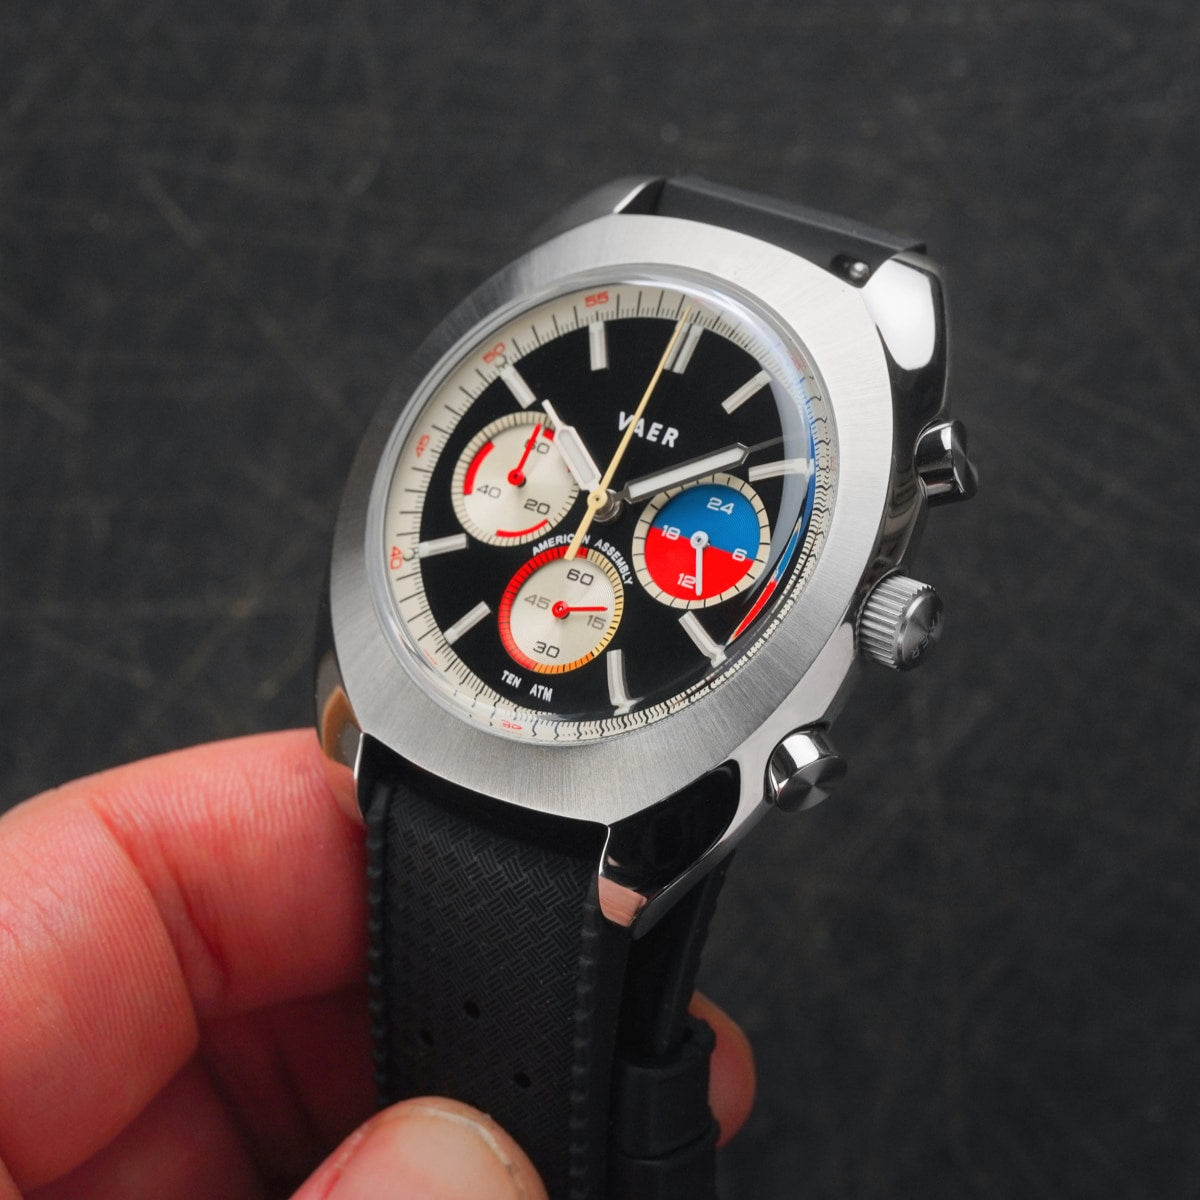 R1 USA Racing Chronograph - Panda 42mm